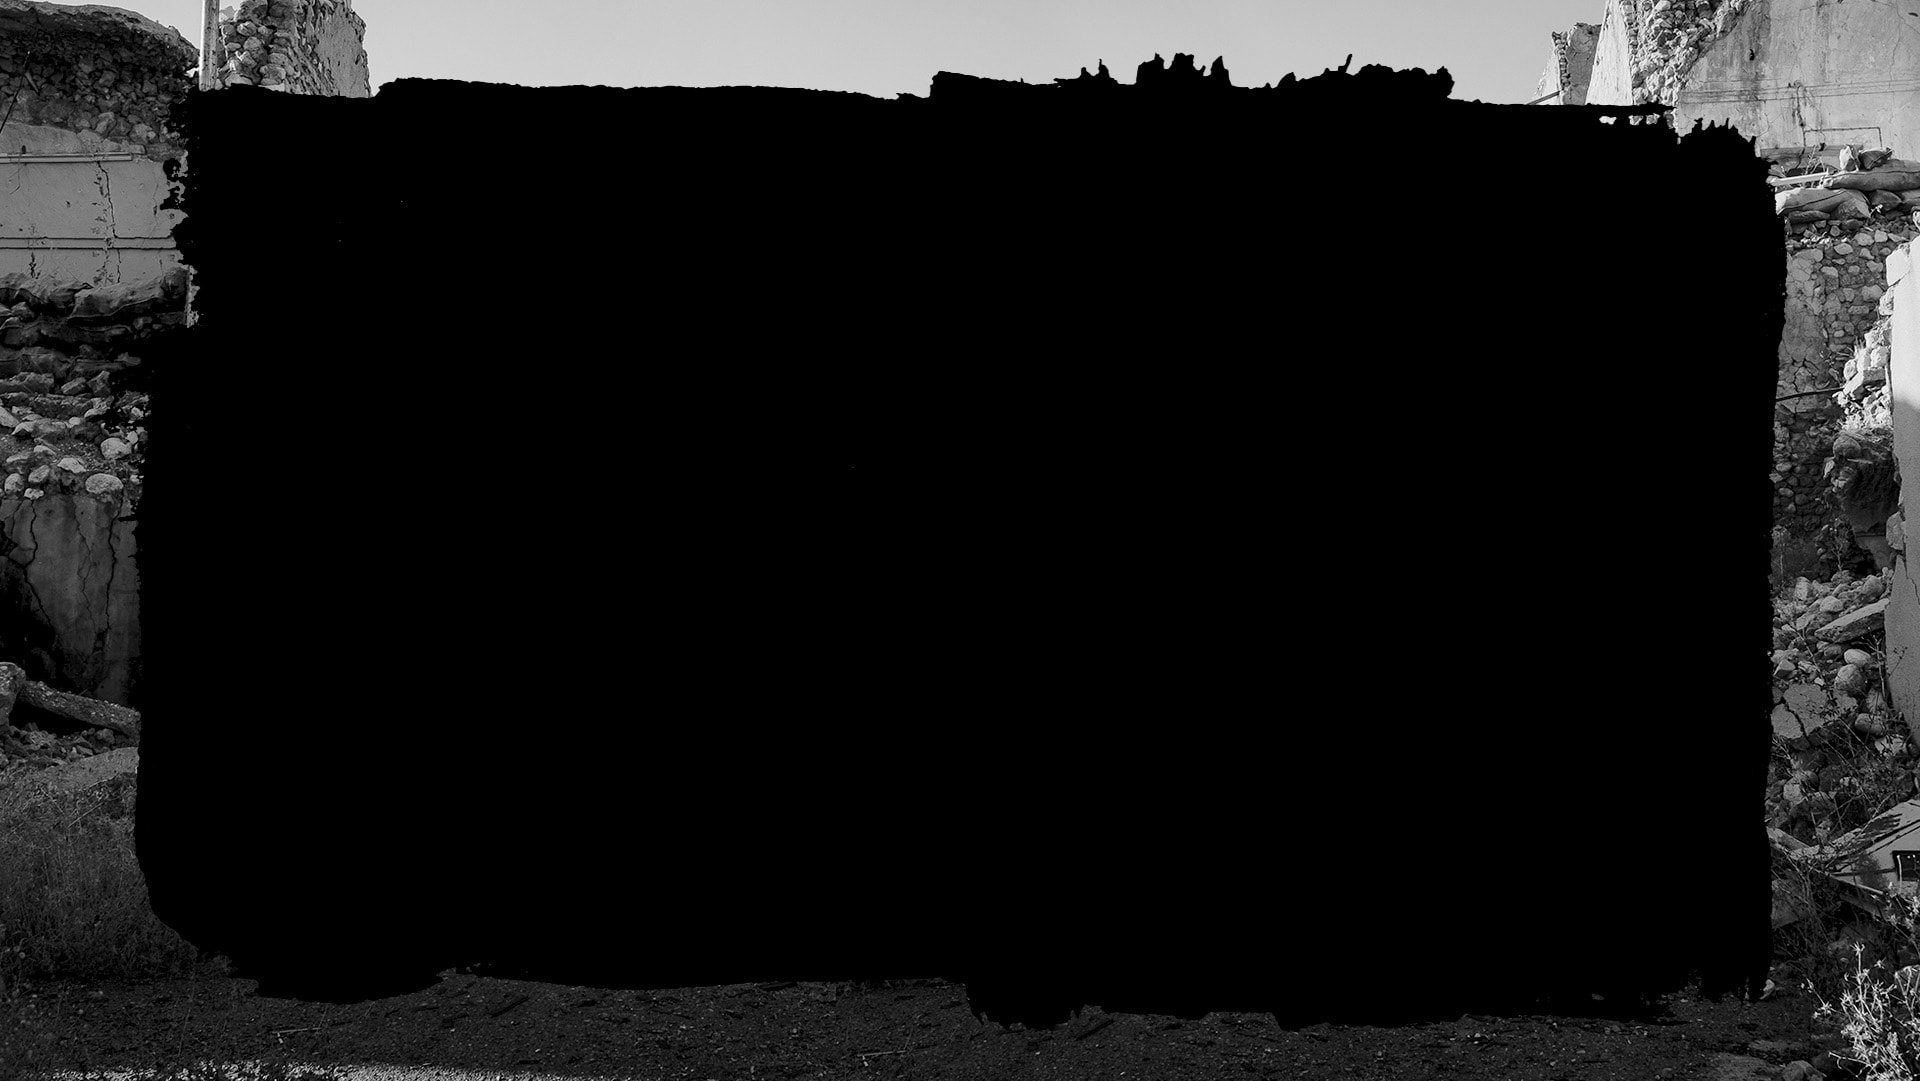 Tarja negra sobre fotografía en blanco y negro de un lugar aparentemente destruído por bombas.